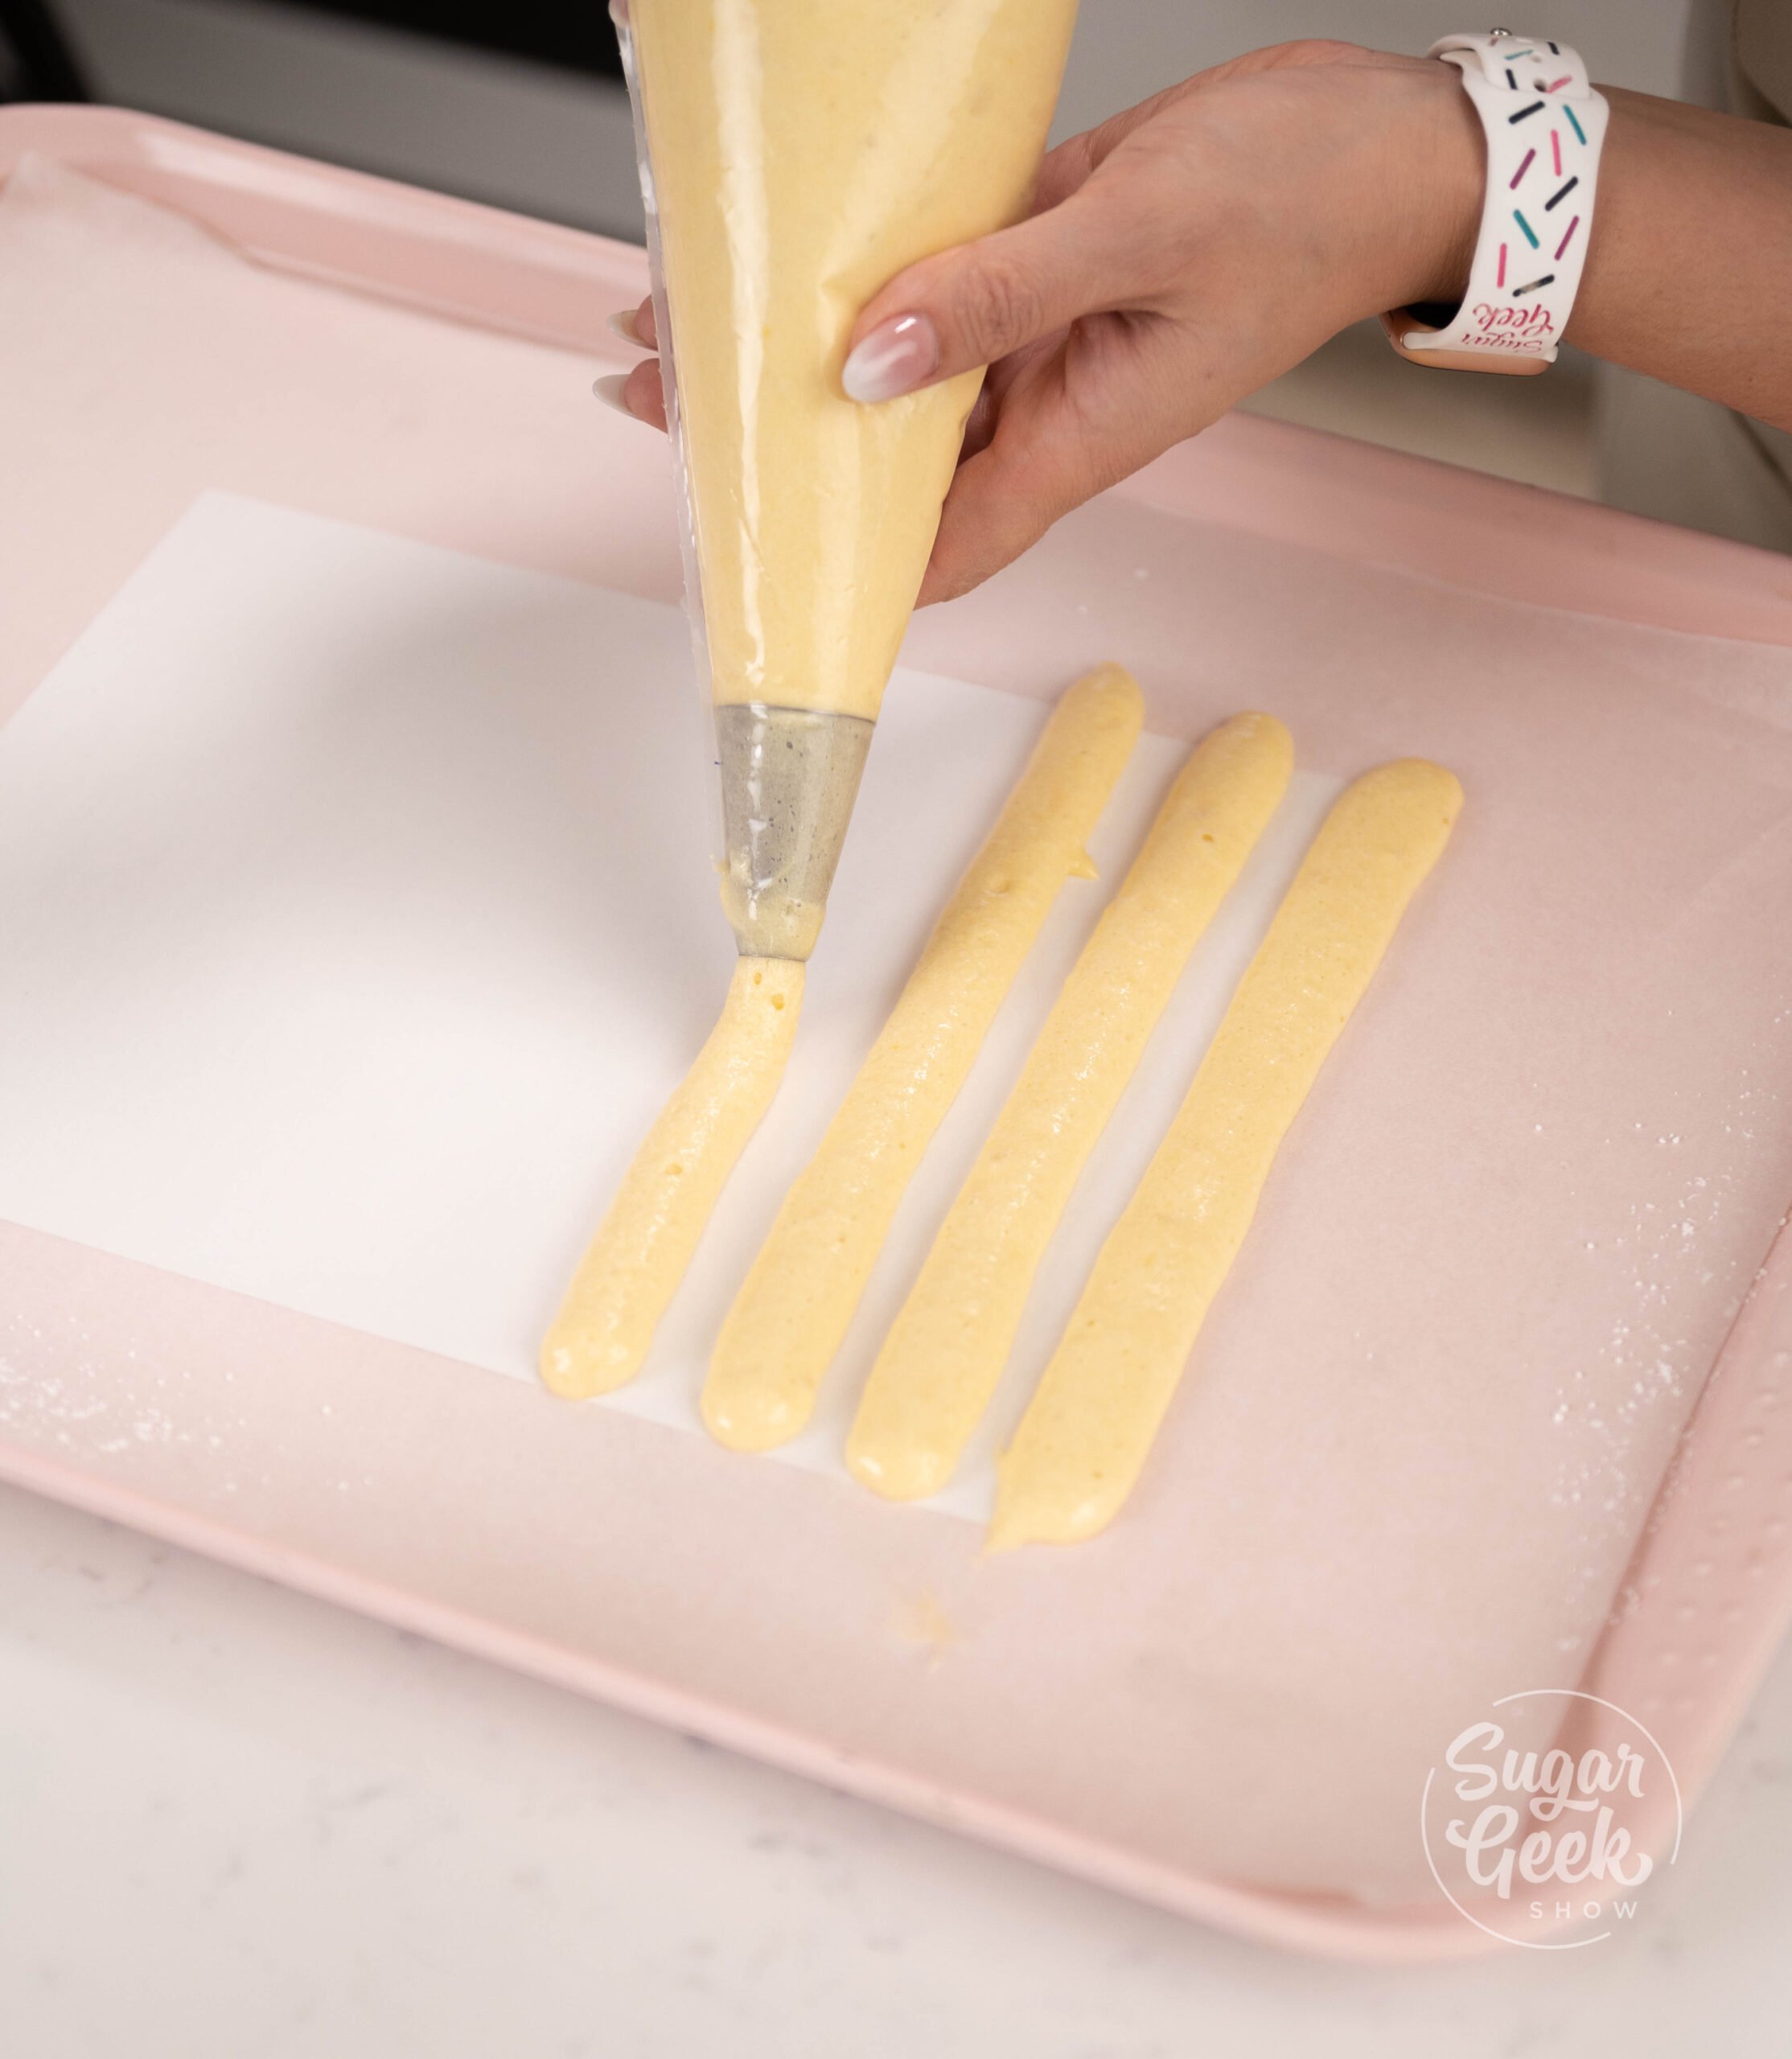 hand holding piping bag piping batter onto baking tray